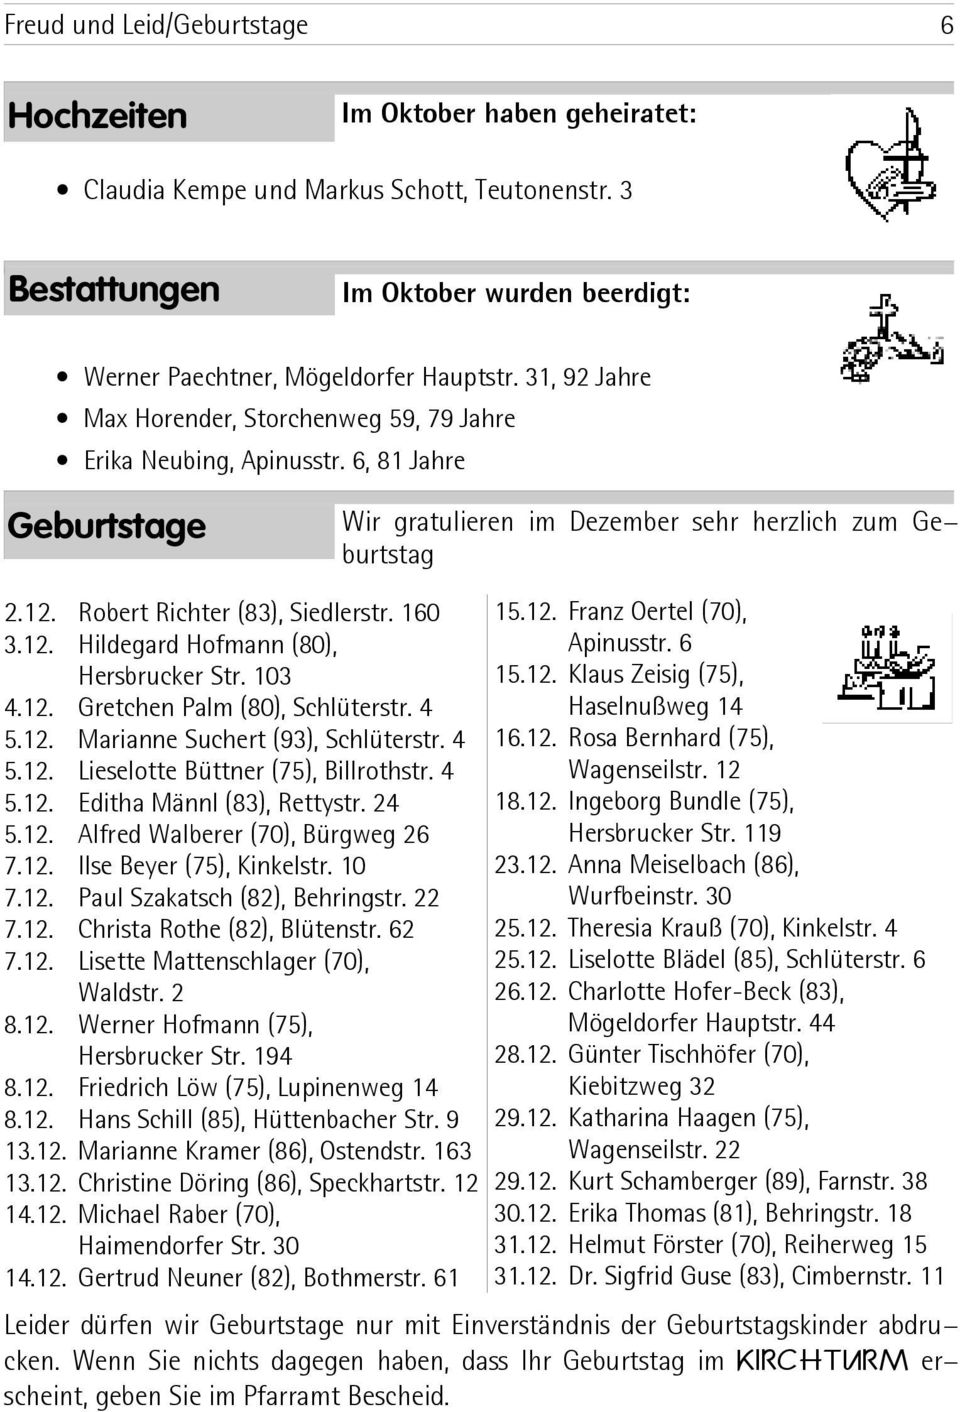 160 3.12. Hildegard Hofmann (80), Hersbrucker Str. 103 4.12. Gretchen Palm (80), Schlüterstr. 4 5.12. Marianne Suchert (93), Schlüterstr. 4 5.12. Lieselotte Büttner (75), Billrothstr. 4 5.12. Editha Männl (83), Rettystr.